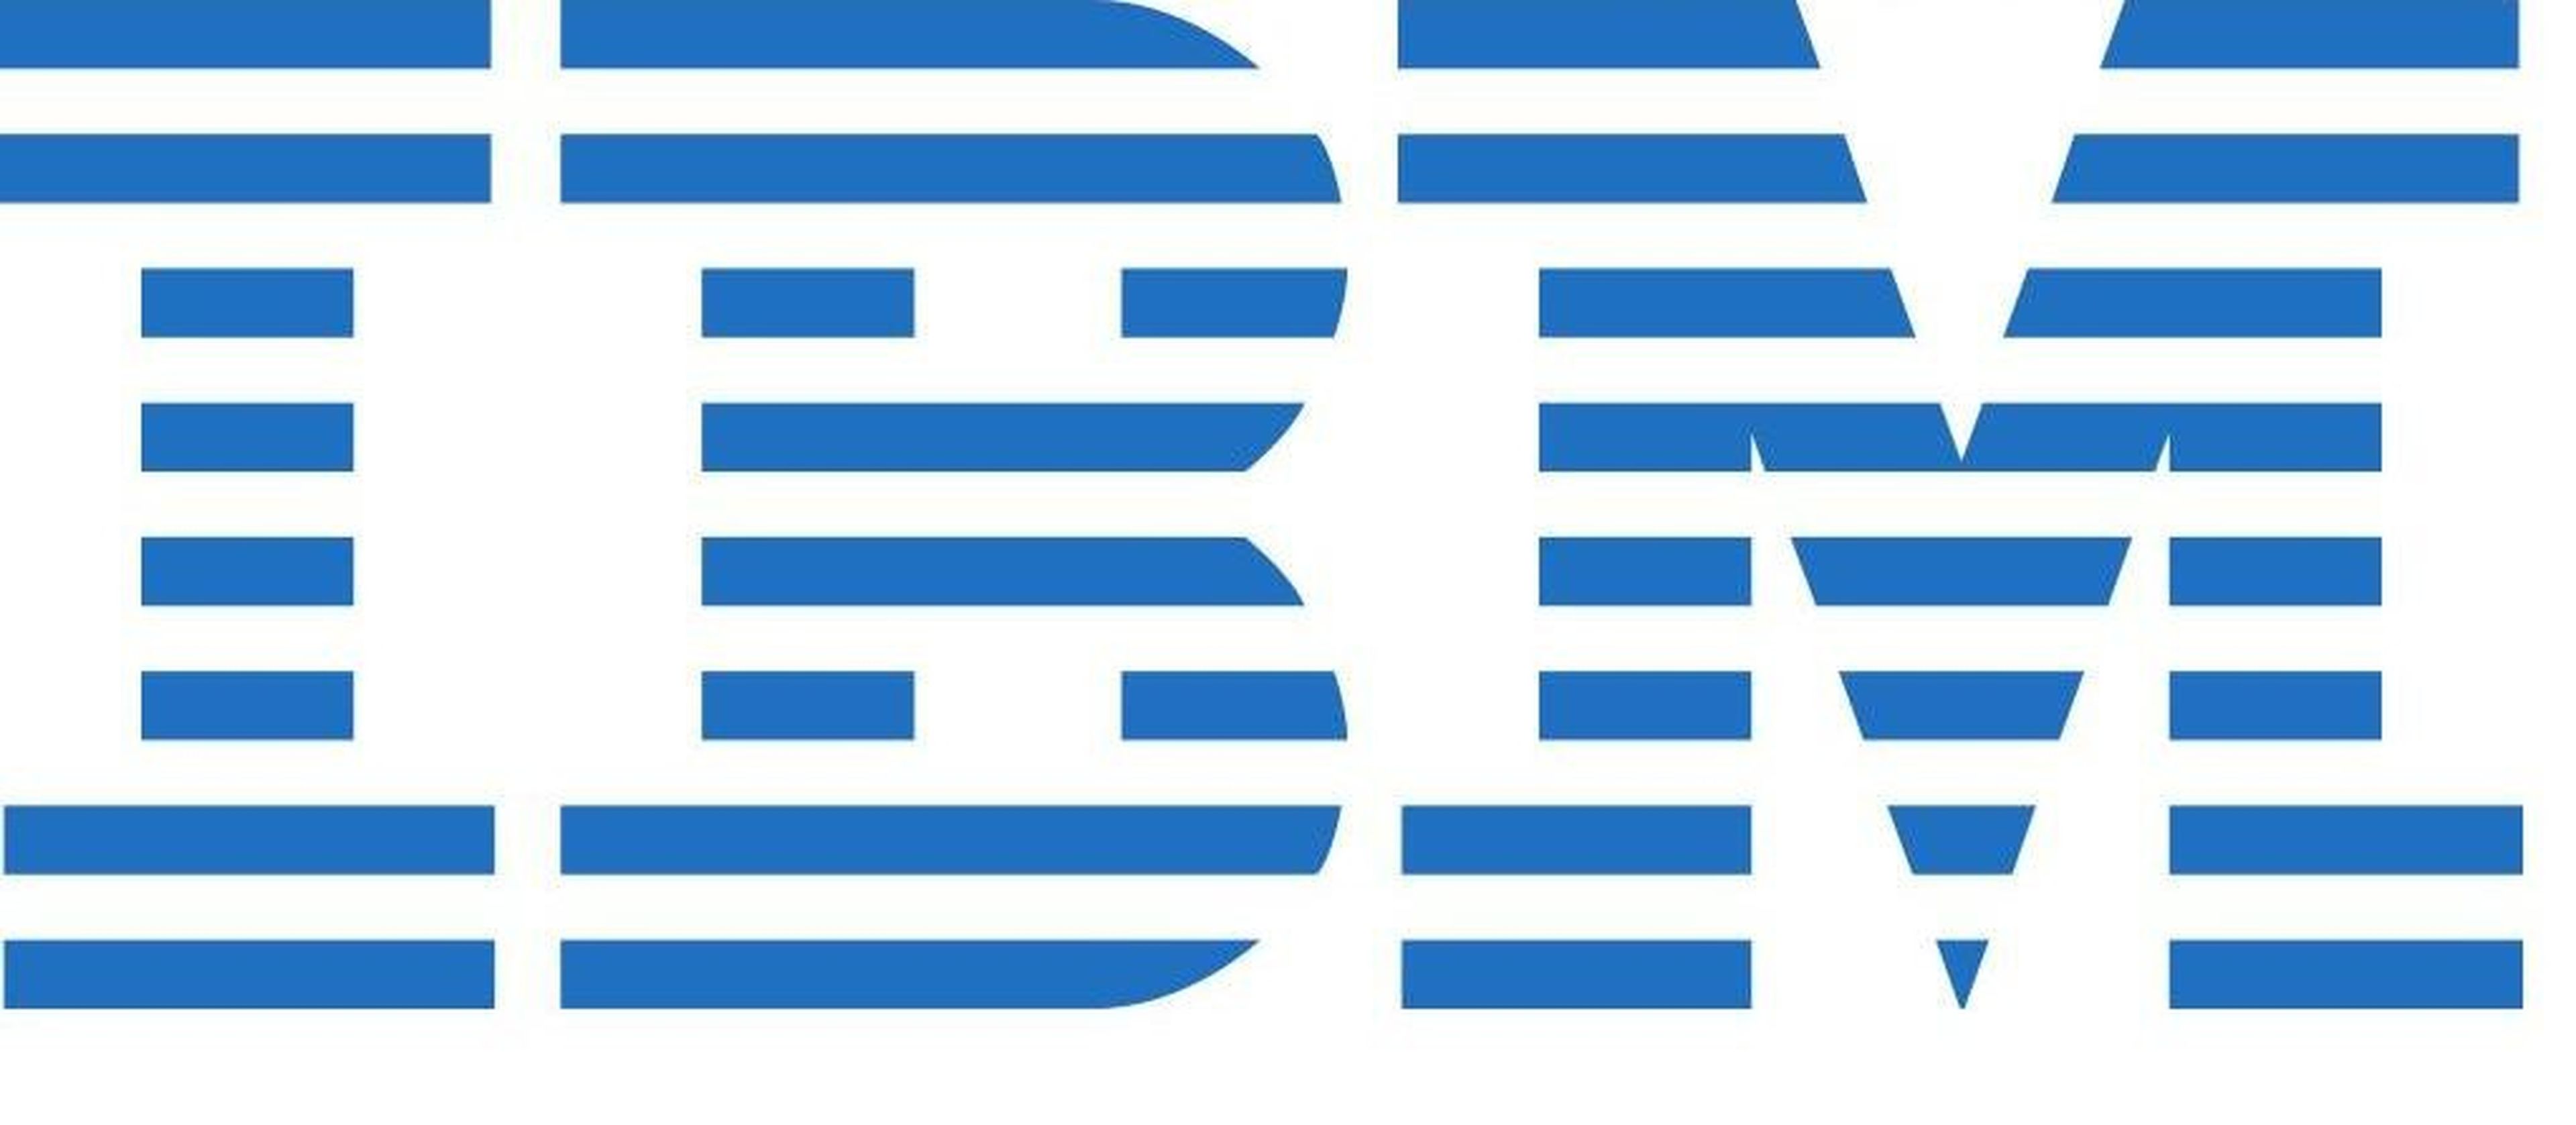 IBM flas de 128TB